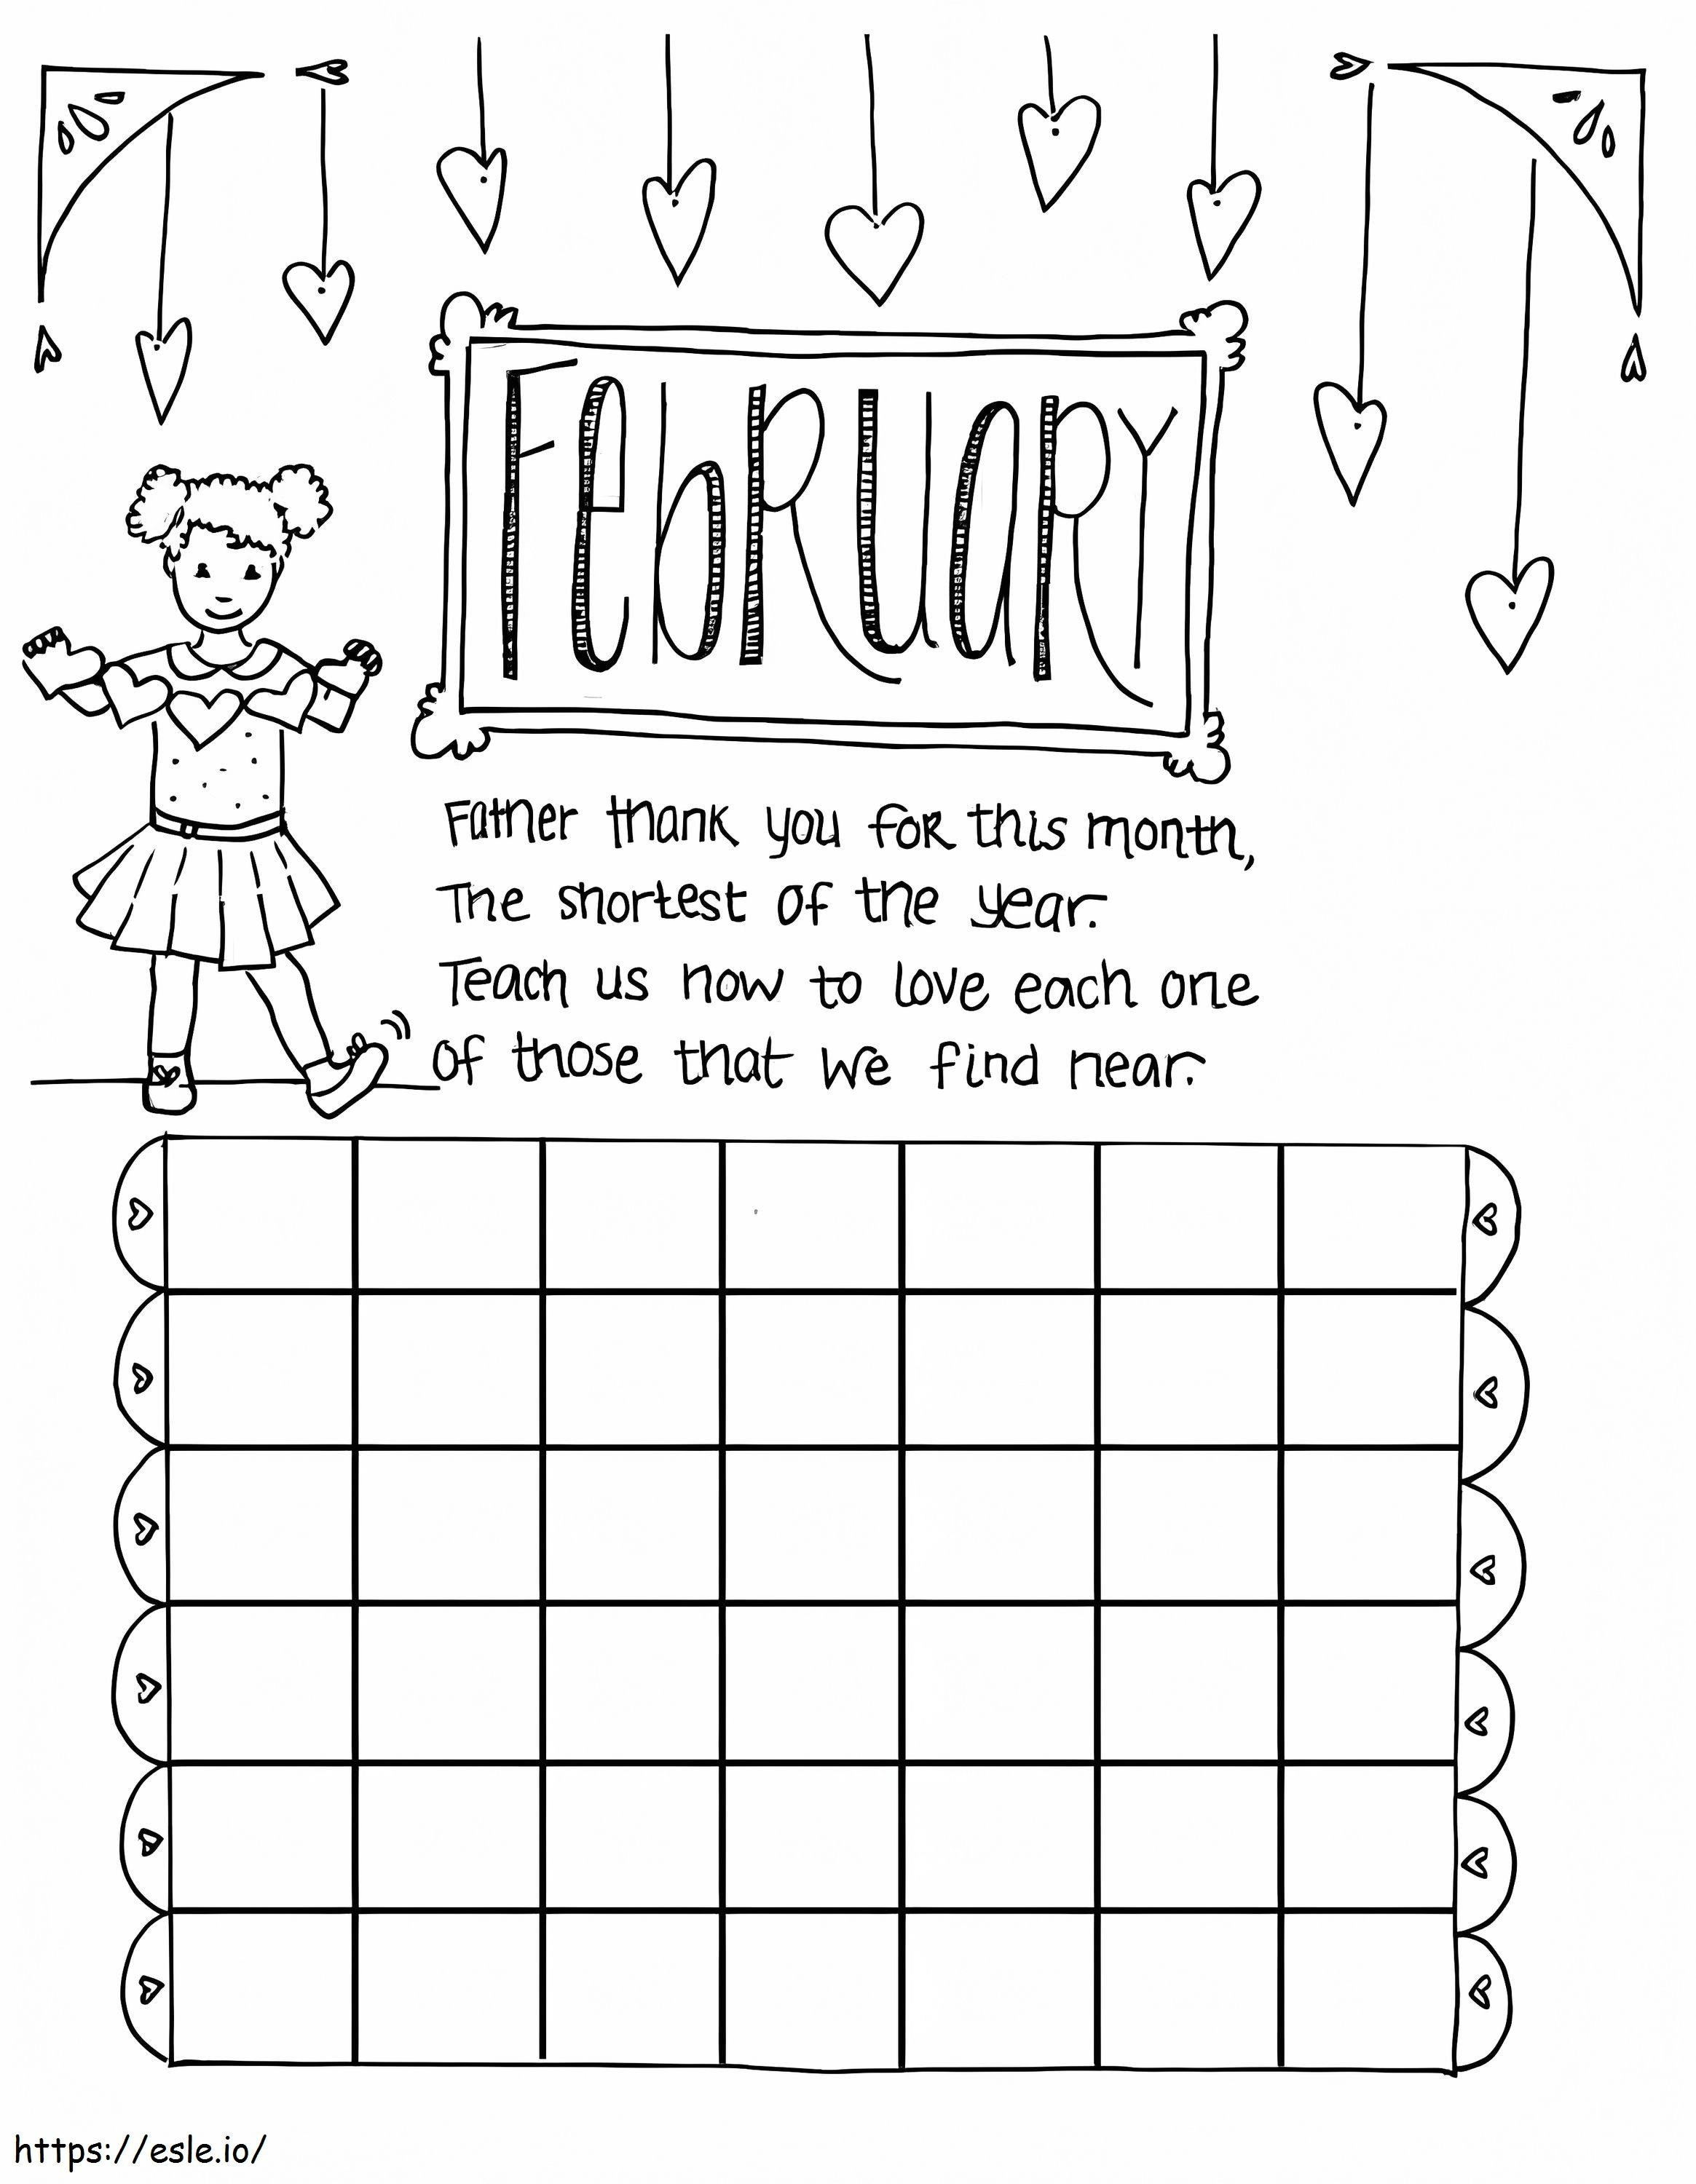 Februar-Kinderkalender ausmalbilder